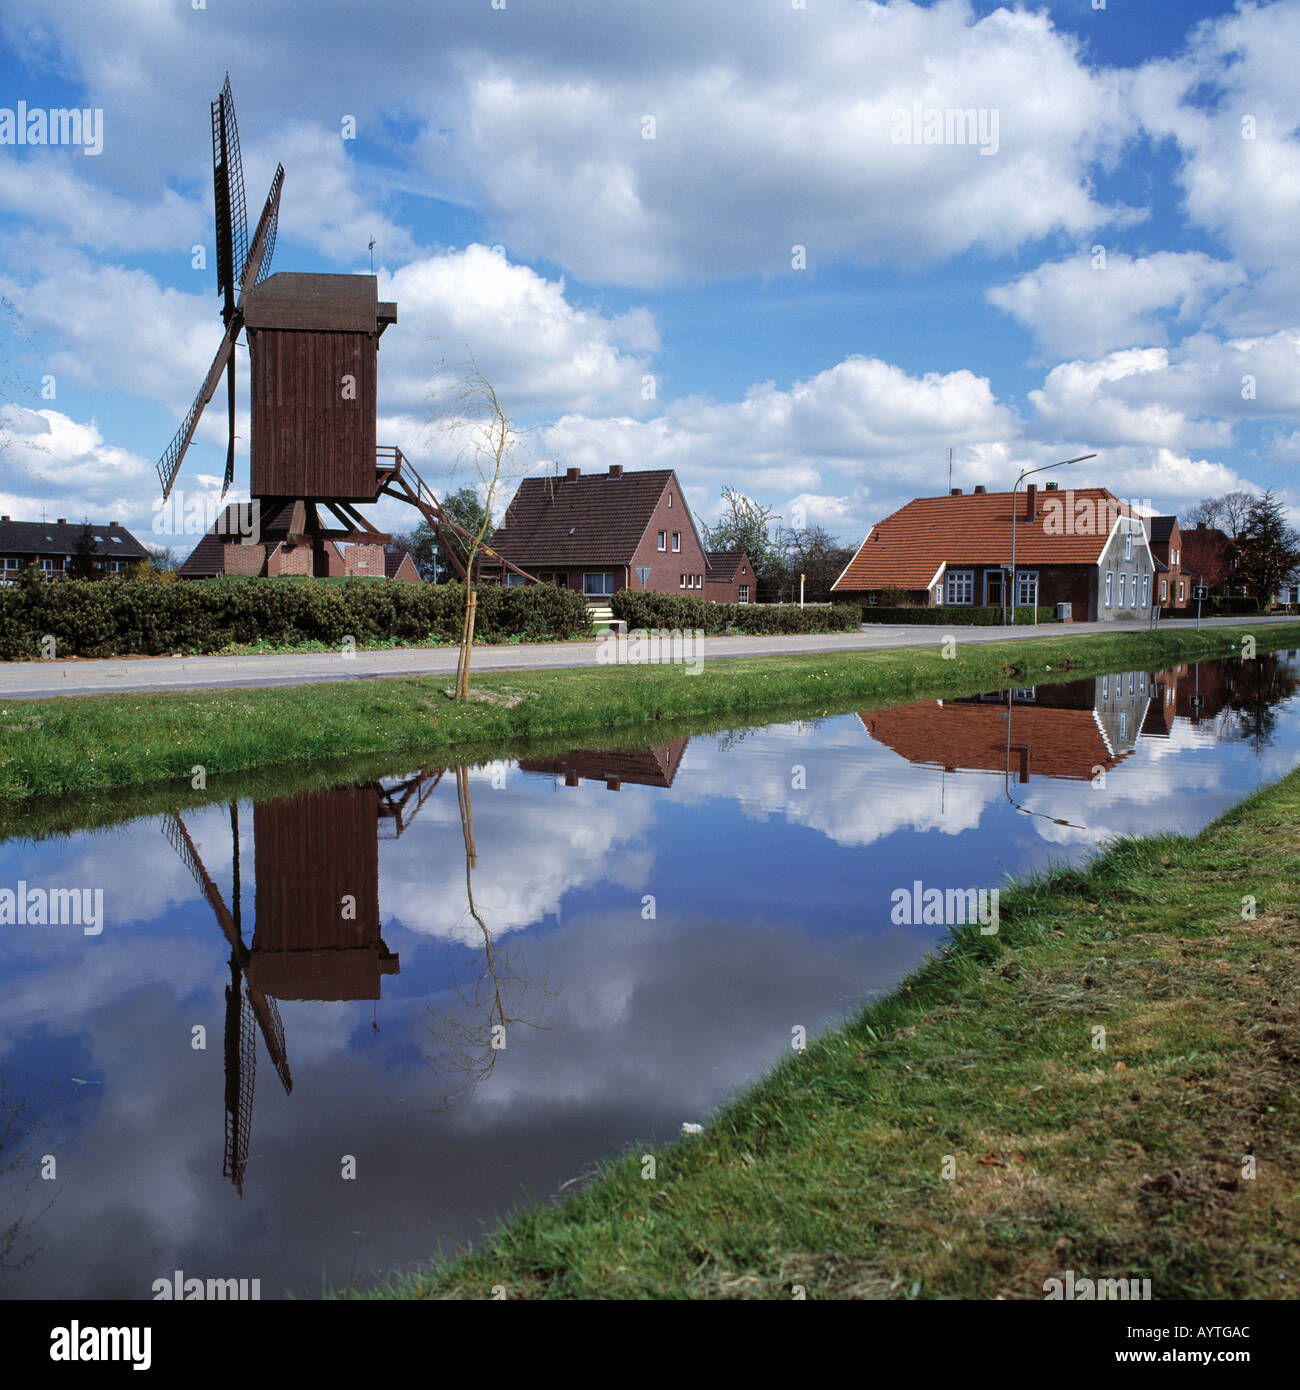 Hauptkanal mit Bockwindmuehle, Haeuser an einem Kanal, Wasserspiegelung, Papenburg, Emsland, Niedersachsen Stock Photo